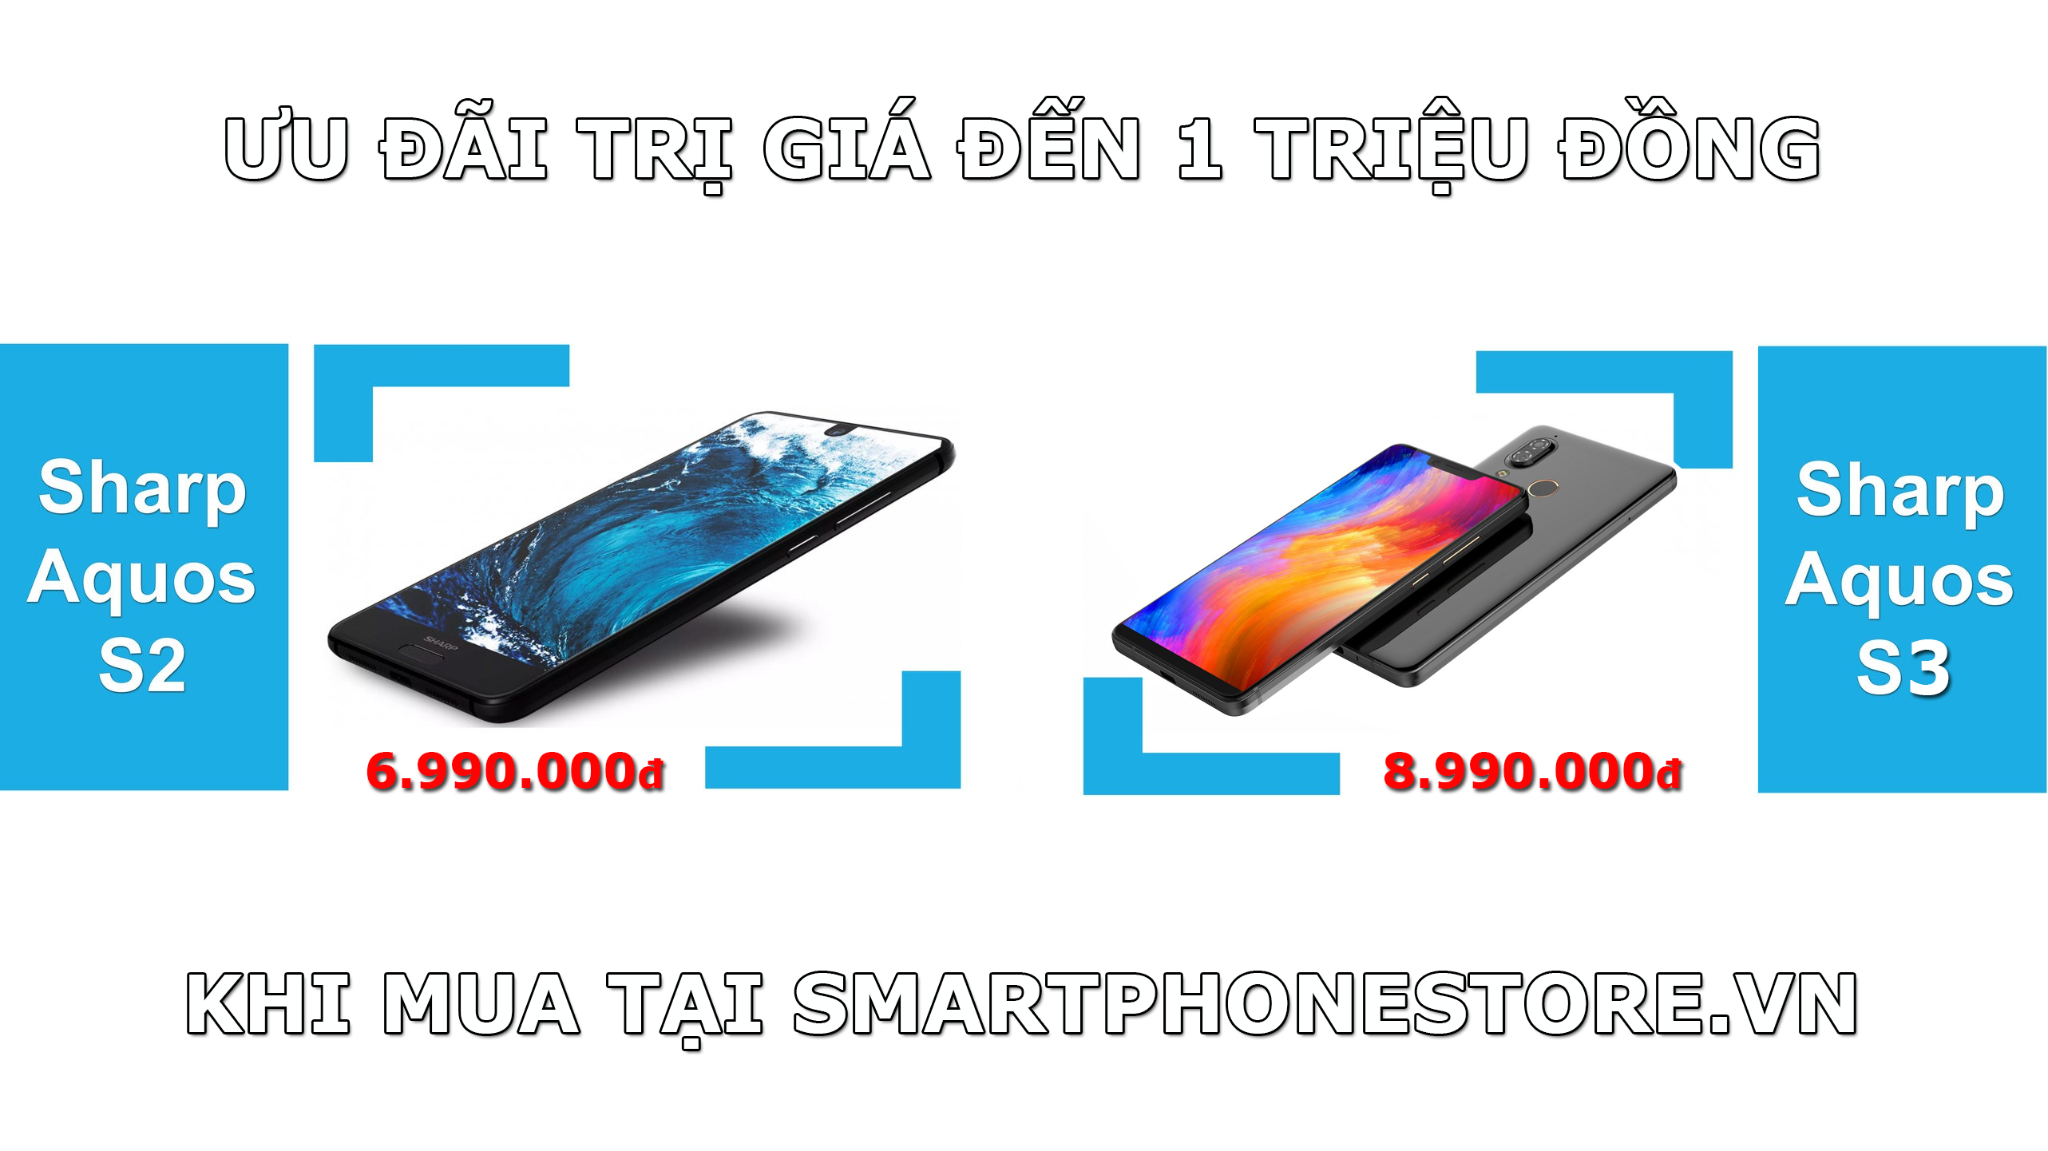 smartphonestore.vn - bán lẻ giá sỉ, online giá tốt điện thoại sharp aquos chính hãng - 09175.09195